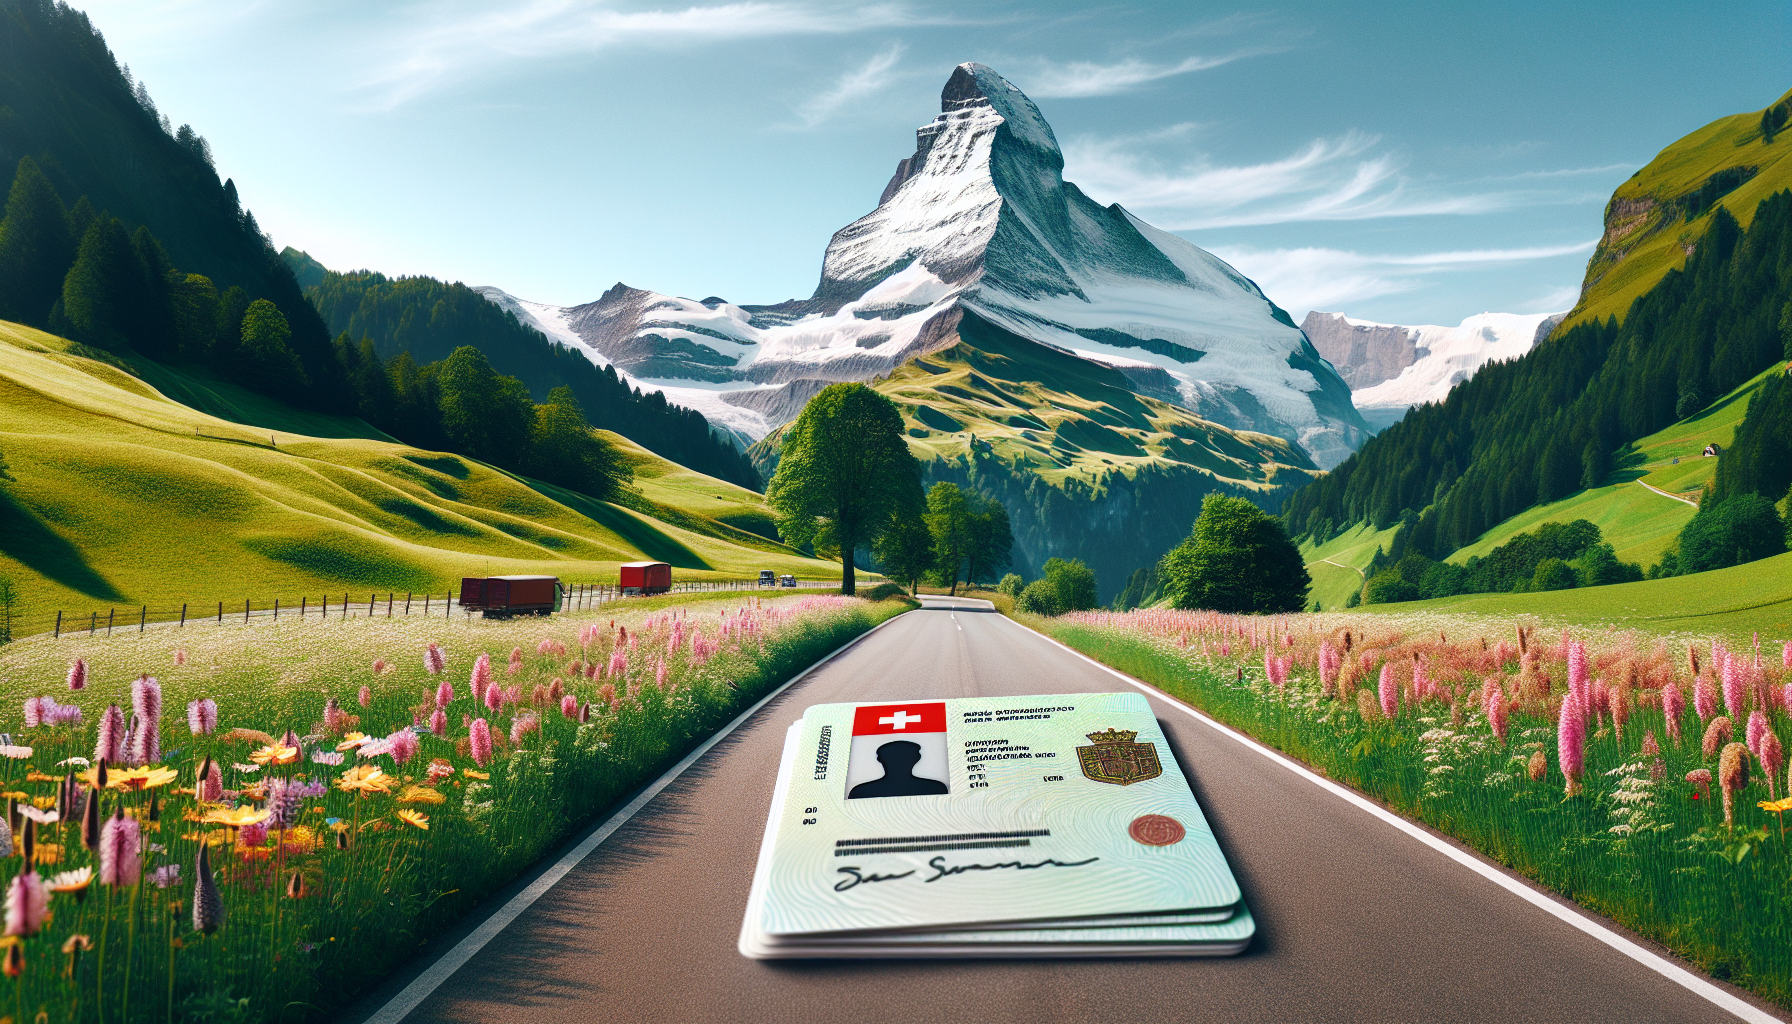 découvrez les démarches à suivre pour obtenir votre permis de conduire en suisse, et obtenez les informations nécessaires pour réussir cette étape importante de votre vie.